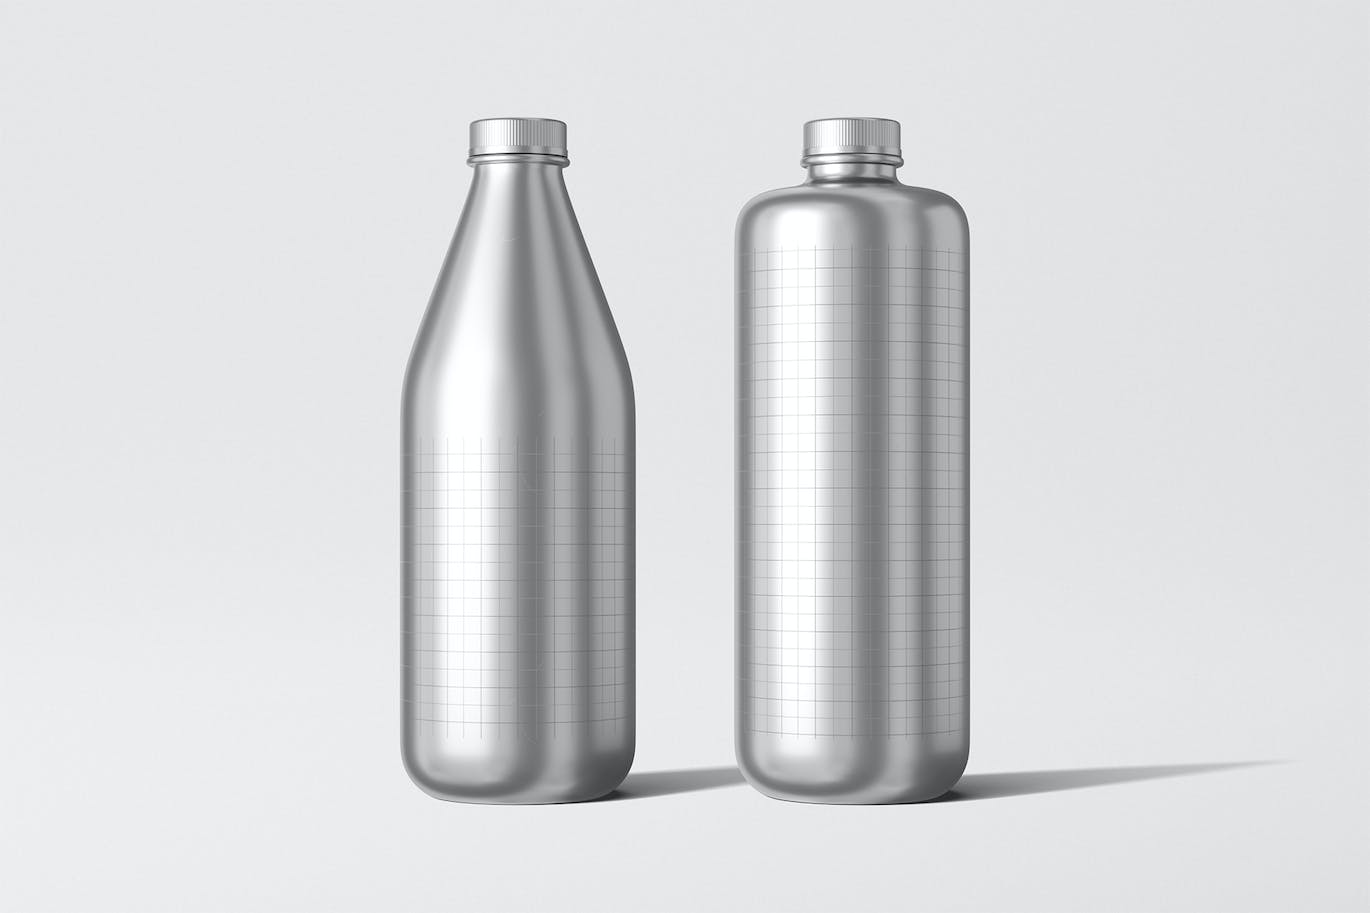 铝瓶饮水瓶包装设计样机 Aluminum Bottle Mockup 样机素材 第3张